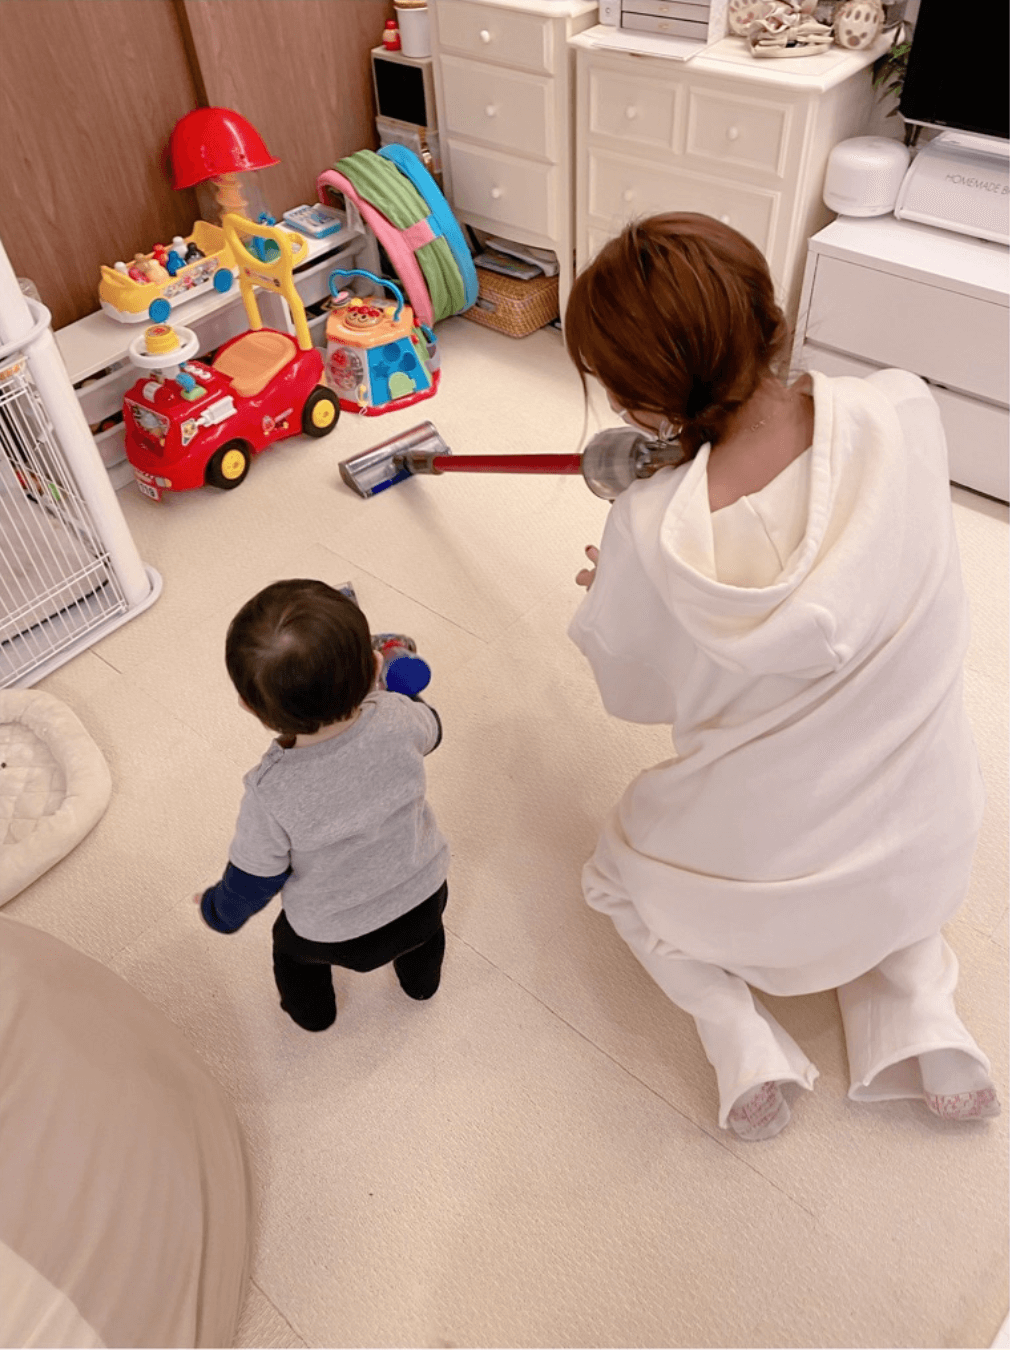 辻希美、1歳2ヶ月の三男と“一緒にお掃除”SHOT公開し「可愛すぎだろぉー」サムネイル画像!